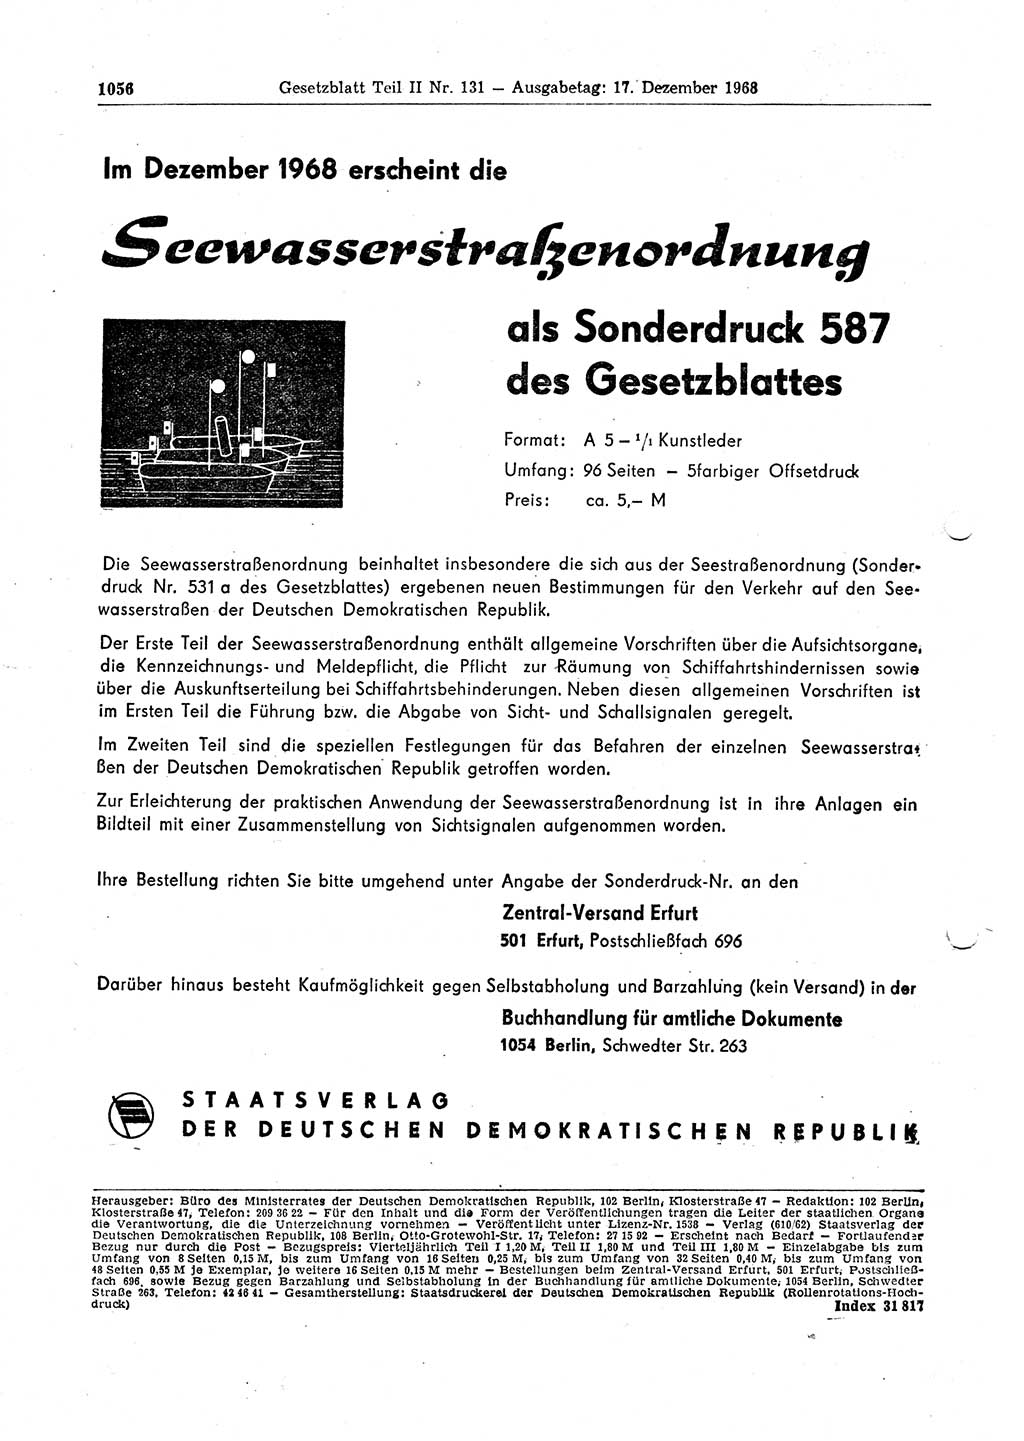 Gesetzblatt (GBl.) der Deutschen Demokratischen Republik (DDR) Teil ⅠⅠ 1968, Seite 1056 (GBl. DDR ⅠⅠ 1968, S. 1056)